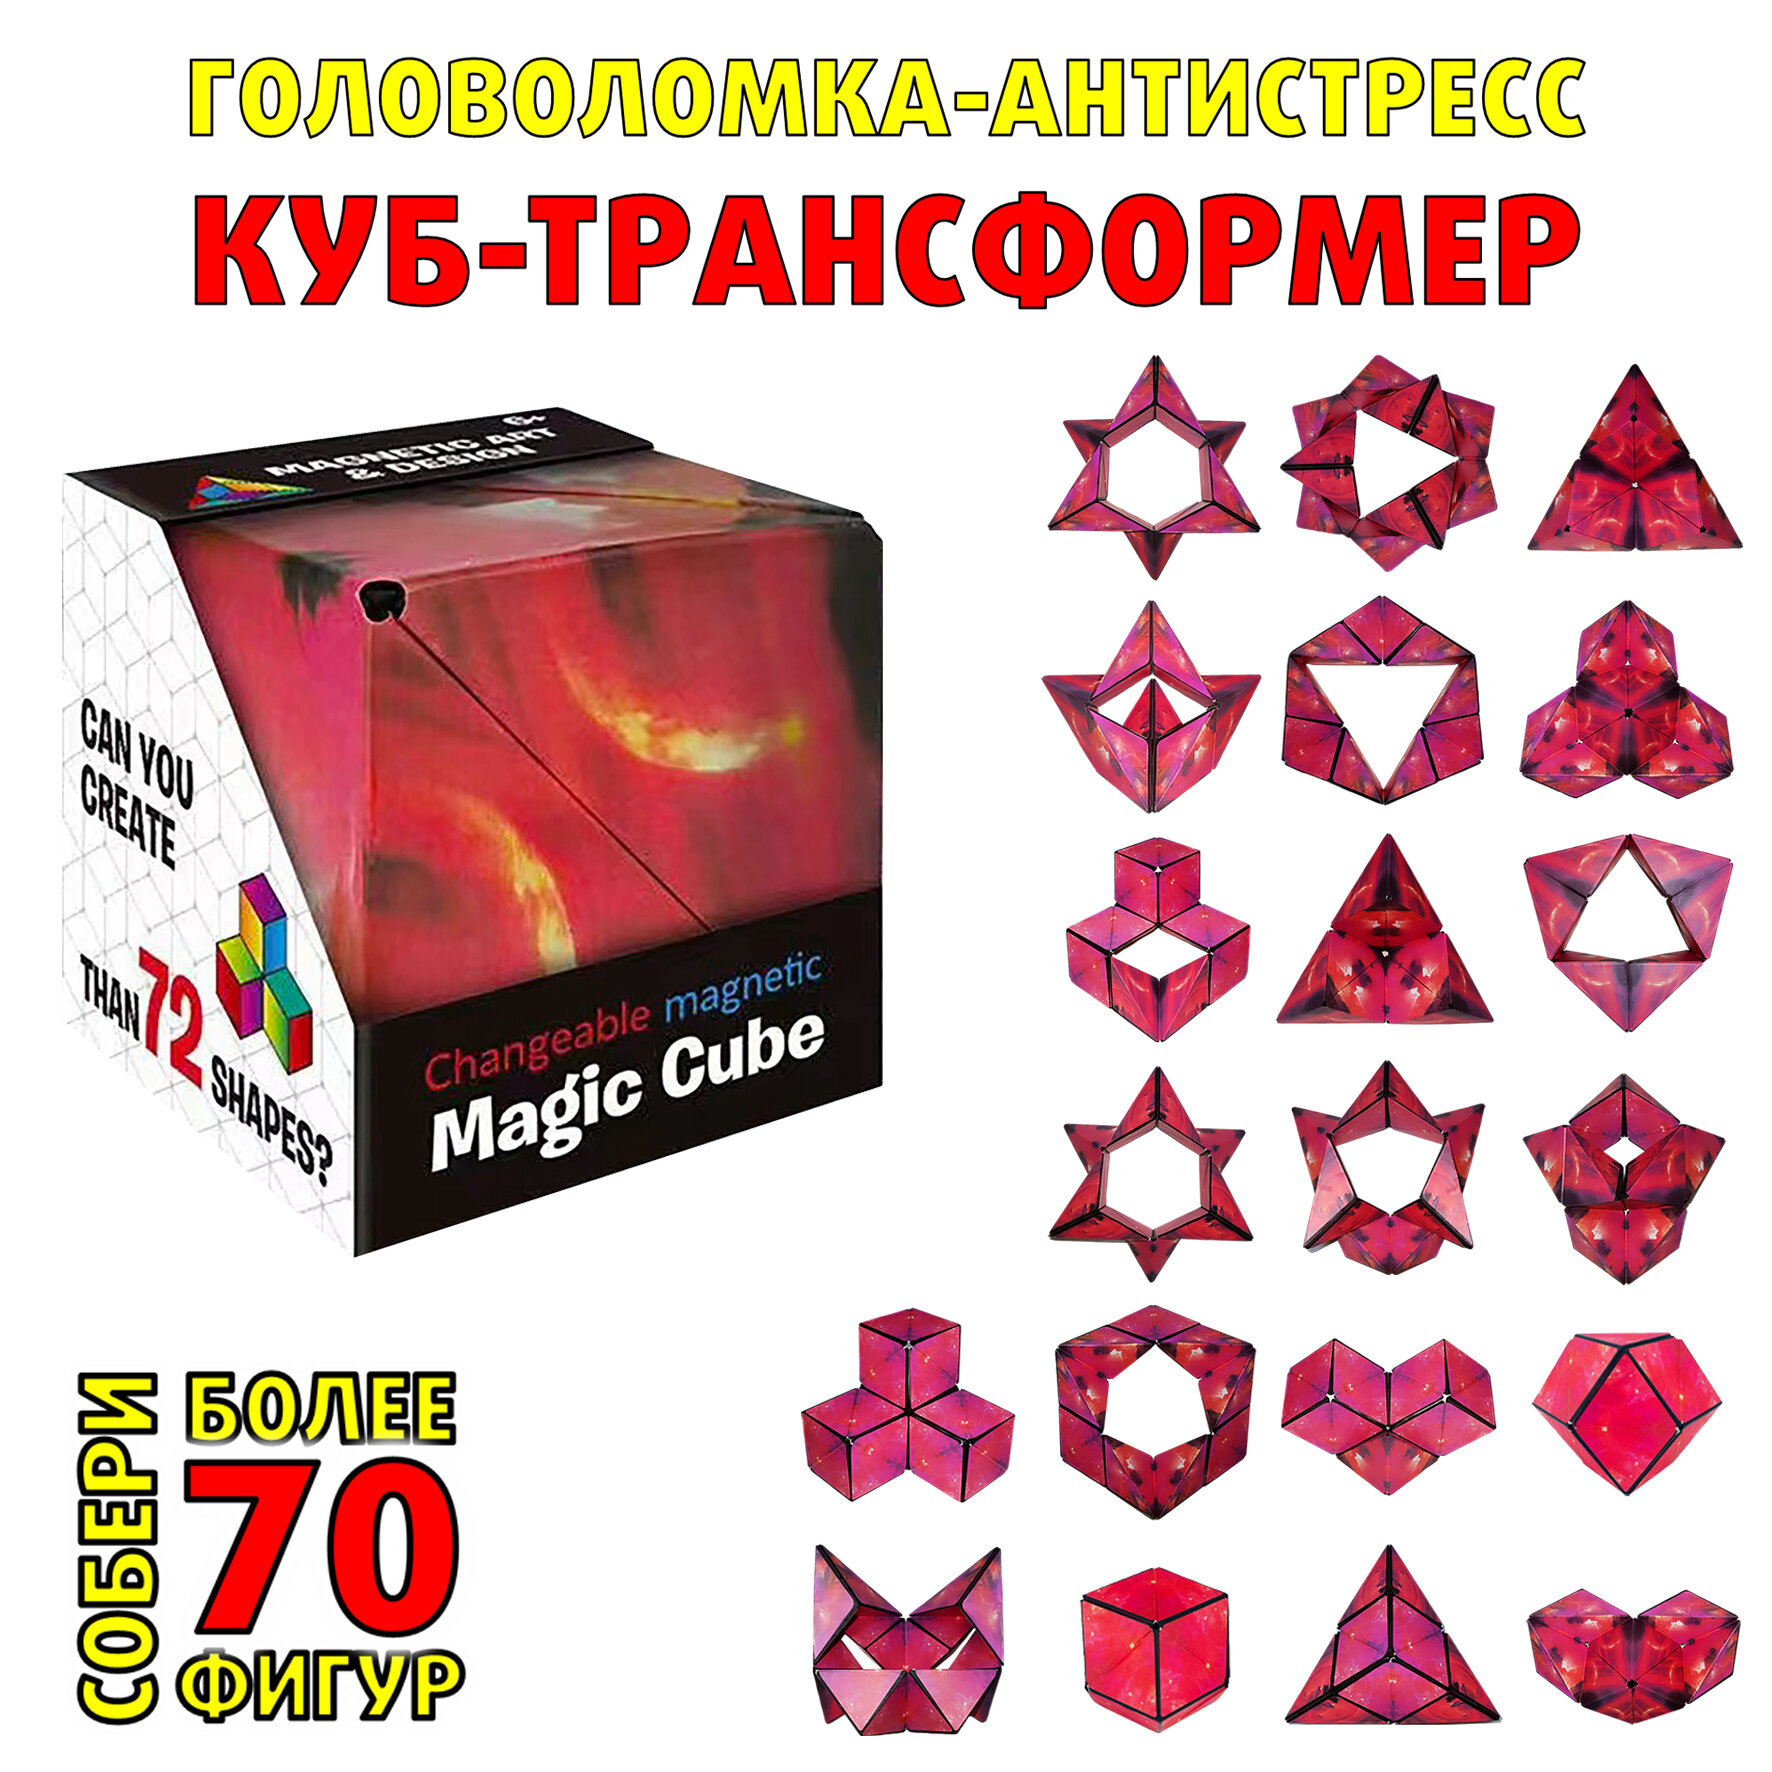 Магнитный 3D волшебный куб-головоломка Magic cube подарок для детей и взрослых, Красный